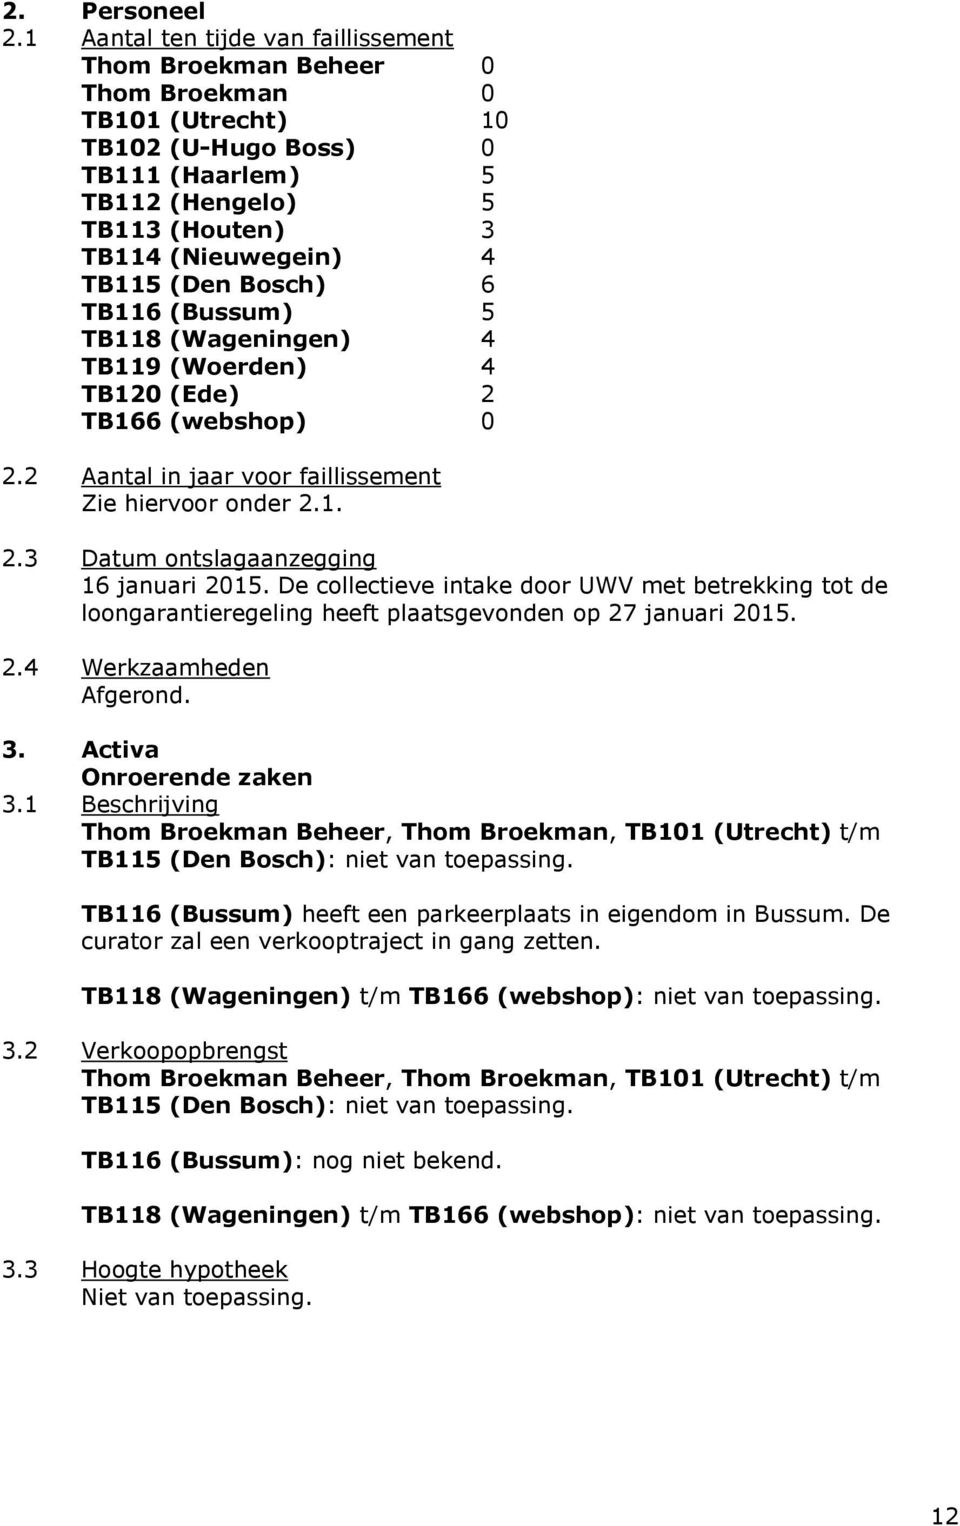 (Den Bosch) 6 TB116 (Bussum) 5 TB118 (Wageningen) 4 TB119 (Woerden) 4 TB120 (Ede) 2 TB166 (webshop) 0 2.2 Aantal in jaar voor faillissement Zie hiervoor onder 2.1. 2.3 Datum ontslagaanzegging 16 januari 2015.